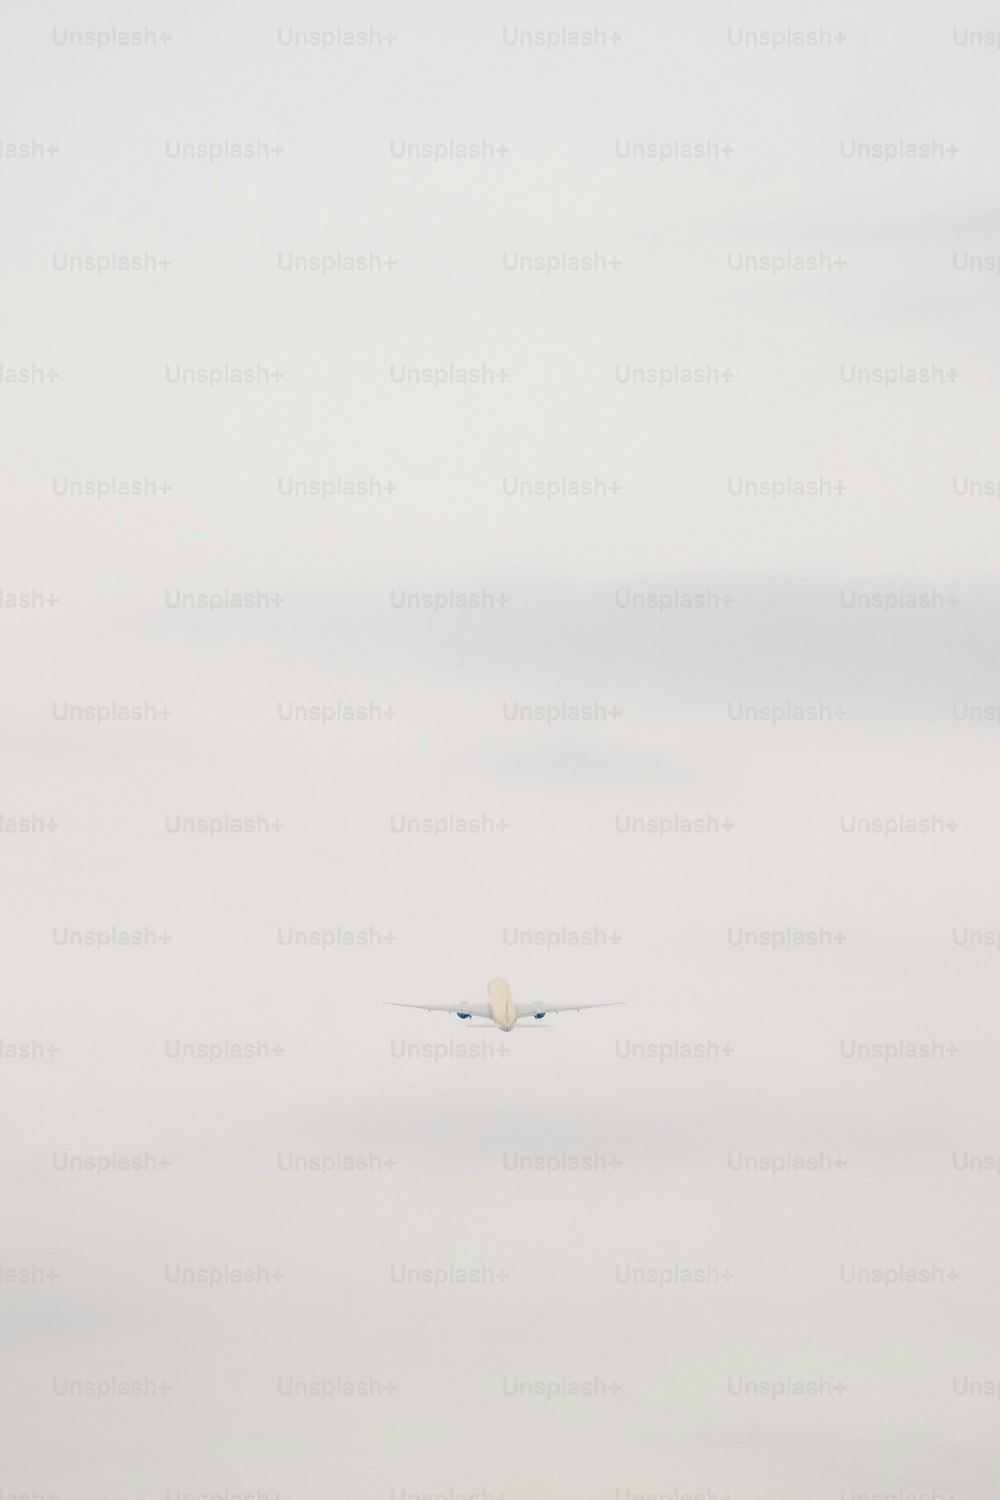 um avião voando no céu com uma nuvem no fundo